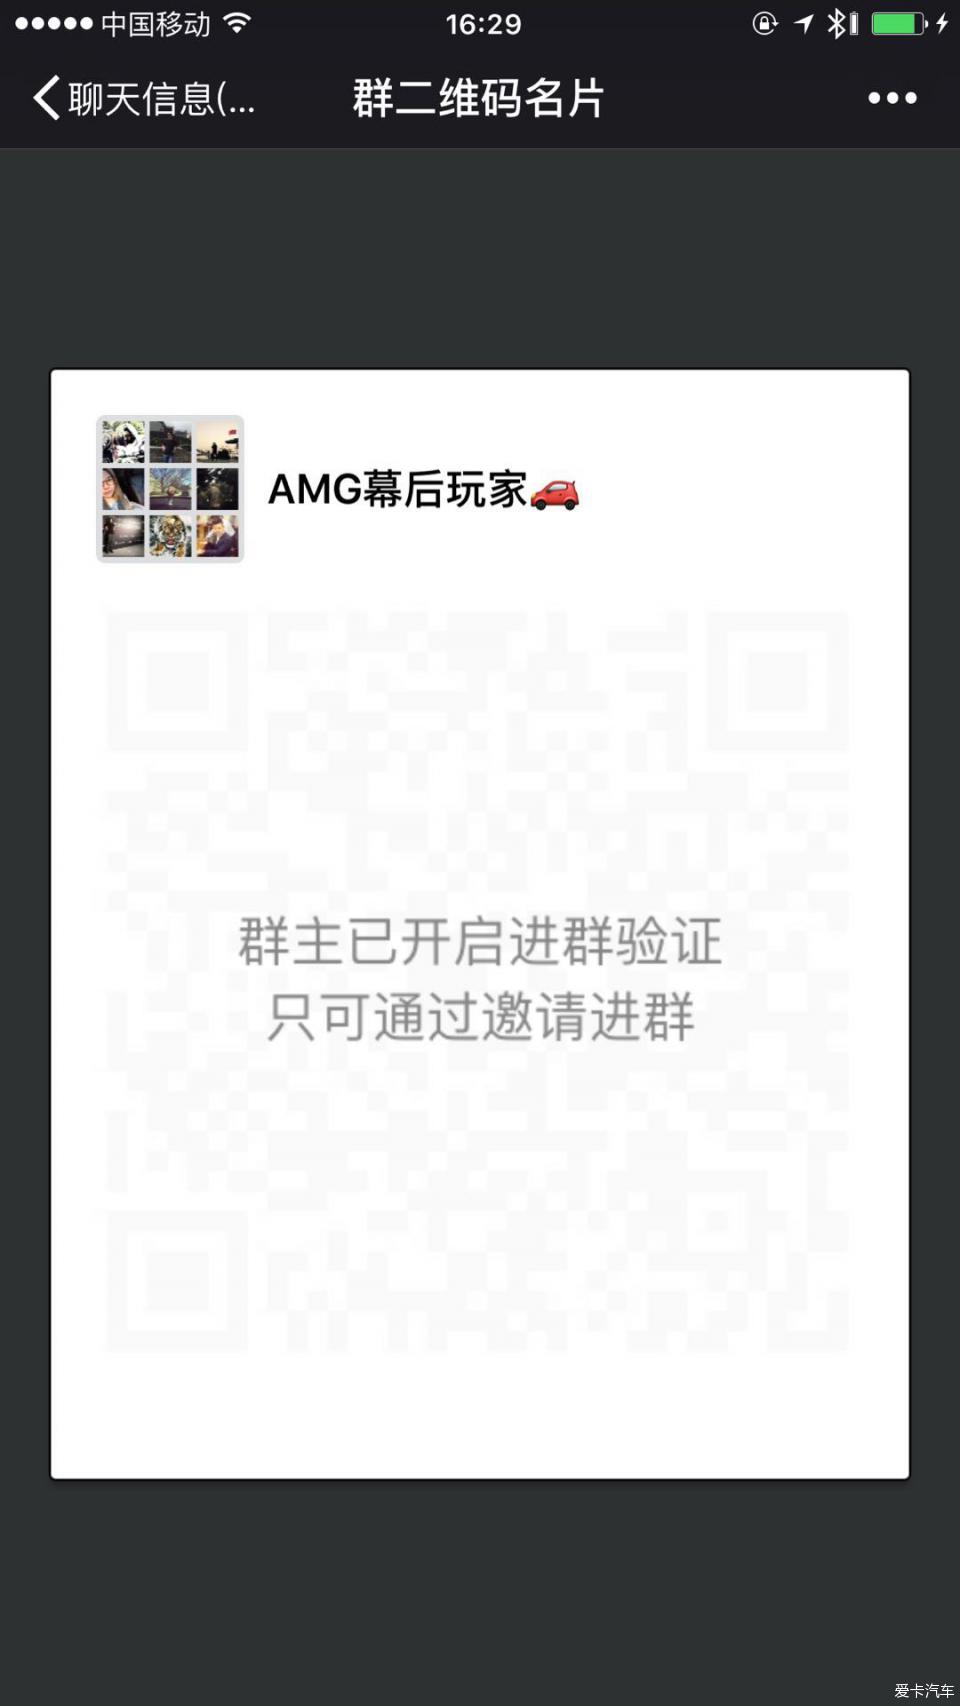 欢迎加入【AMG幕后玩家】微信群，本群仅限AMG车主加入